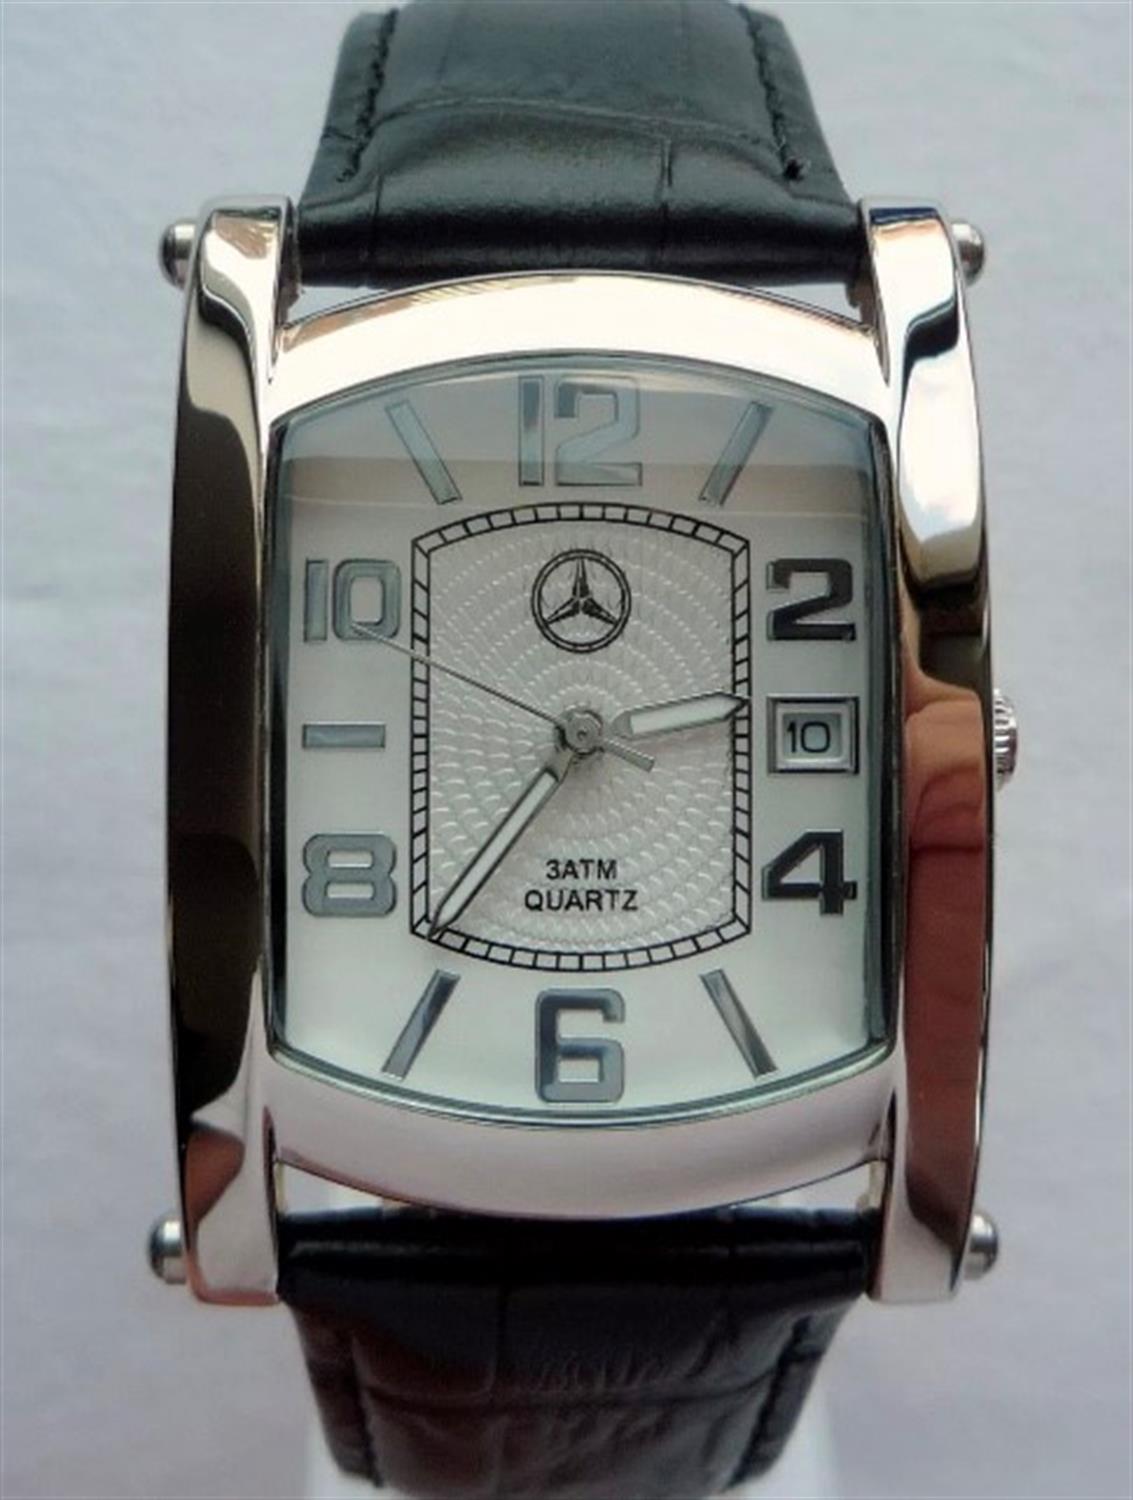 A Rare Mercedes Benz Sports Watch.